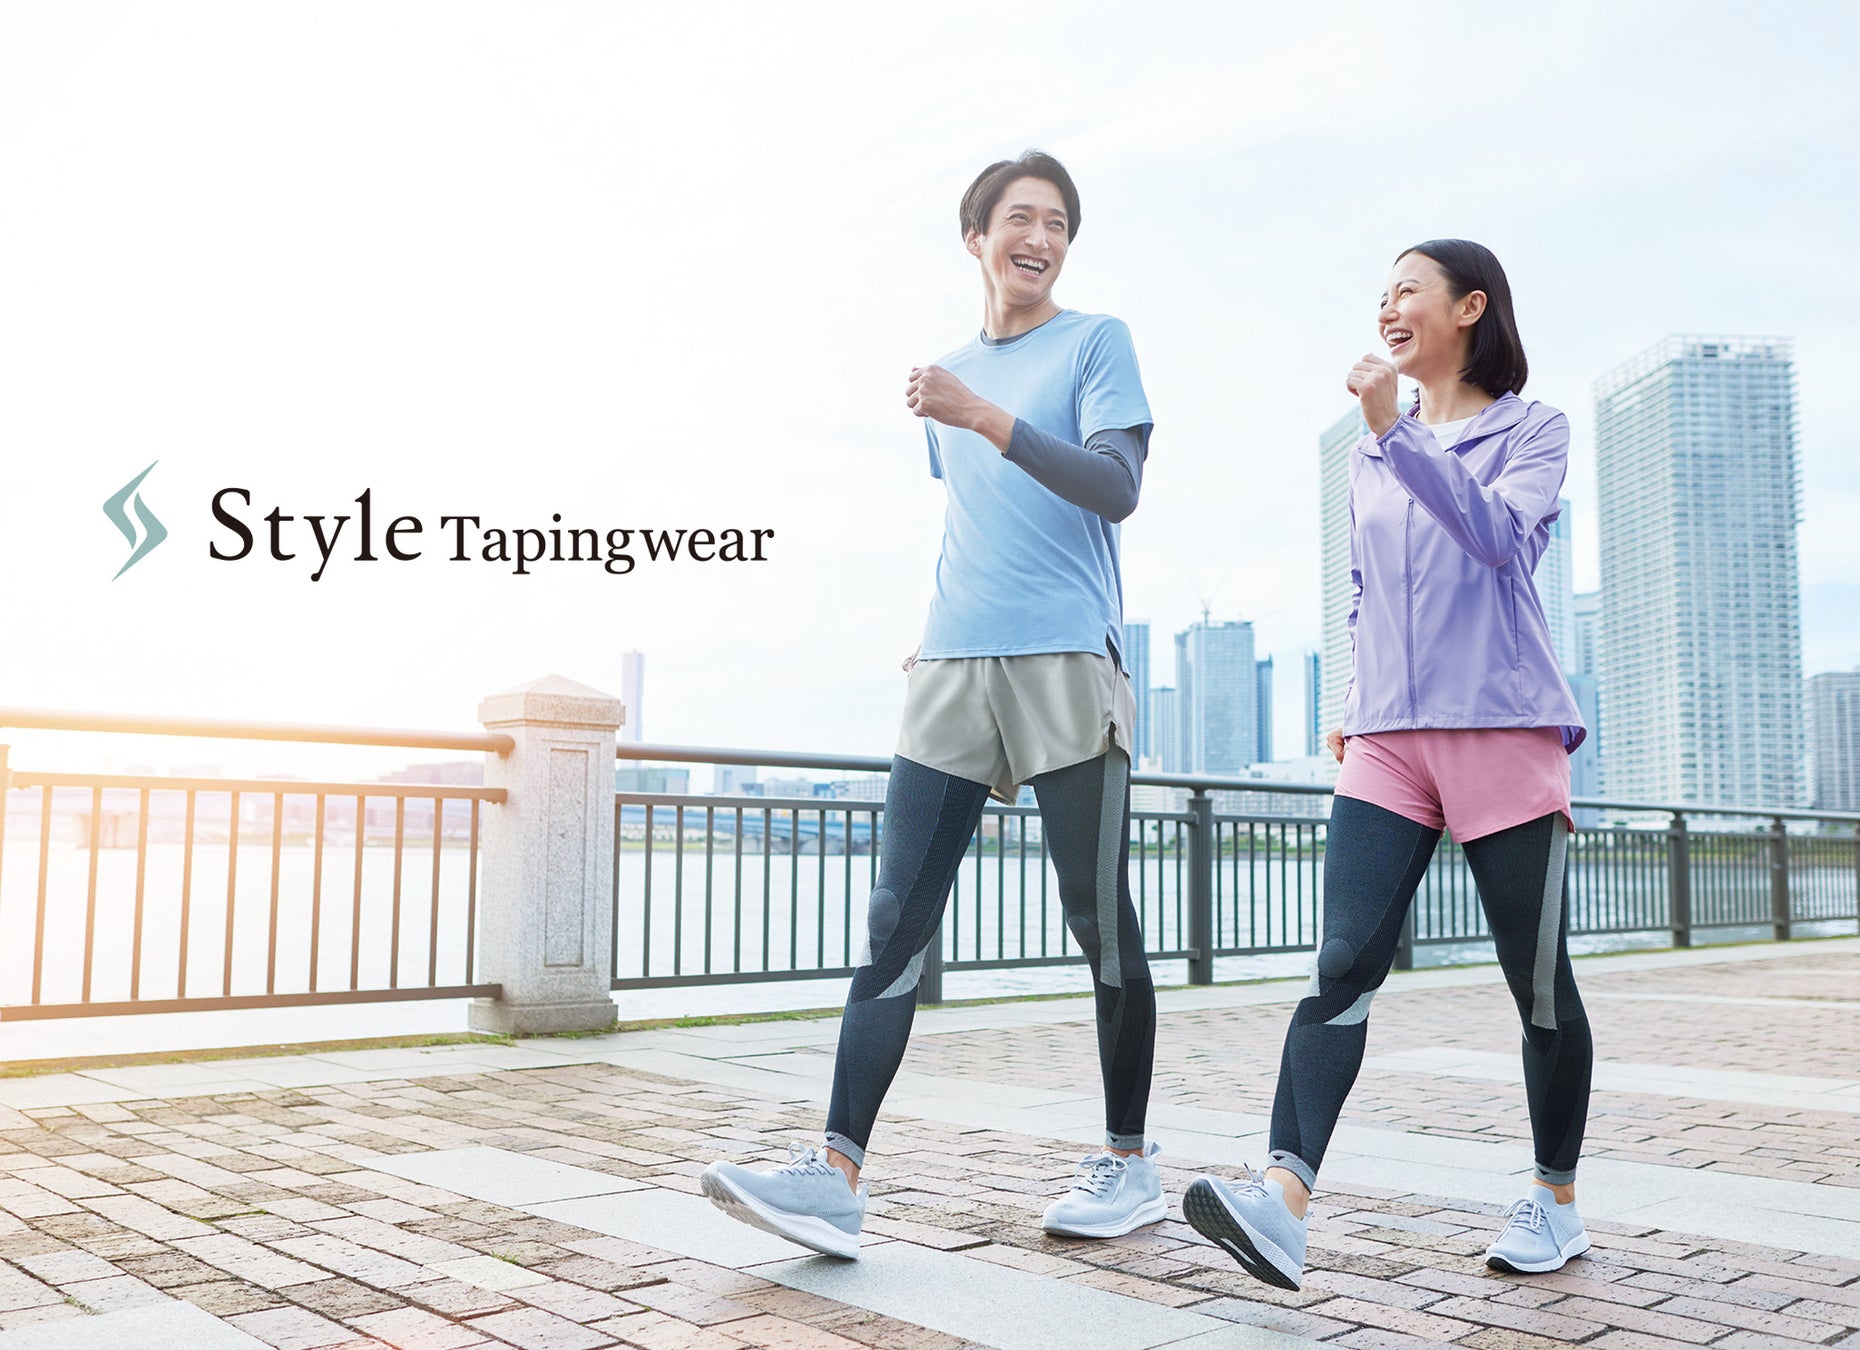 着用することで歩行時の姿勢をサポートする「Style Tapingwear Leggings」「Style Tapingwear Socks」2月20日より発売開始